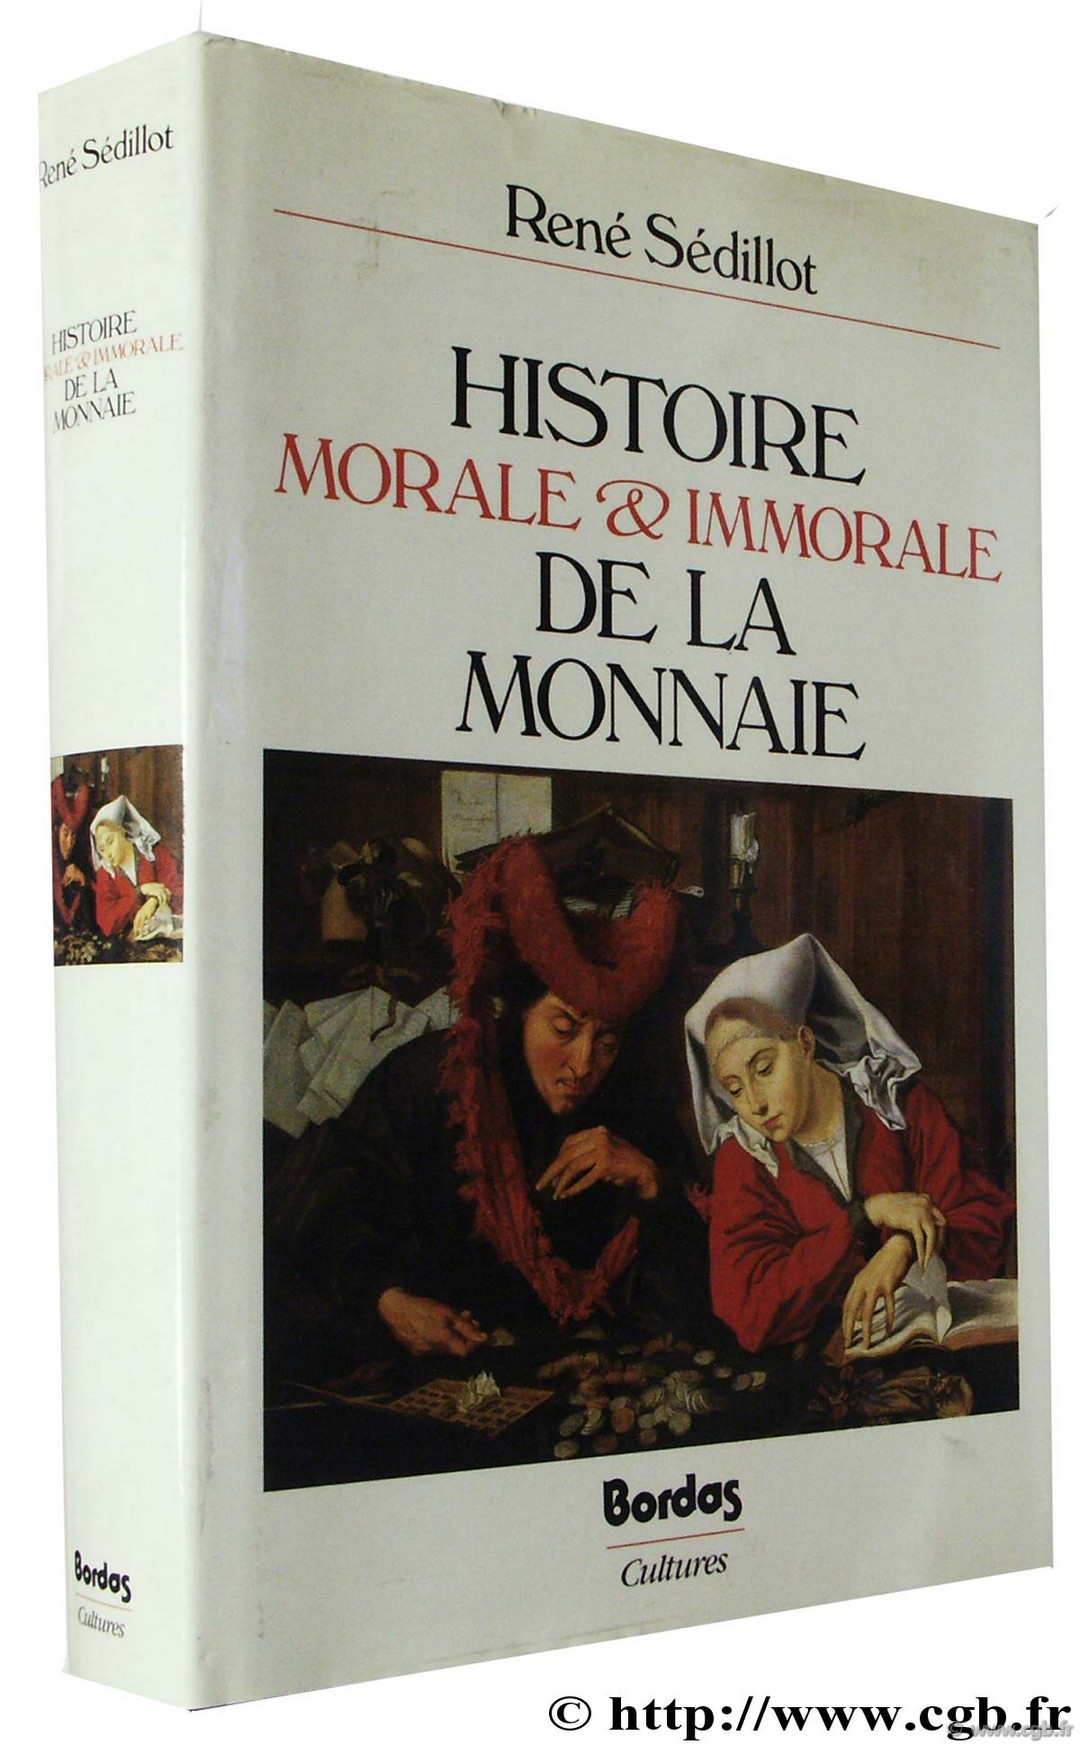 Histoire morale et immorale de la monnaie SEDILLOT R.